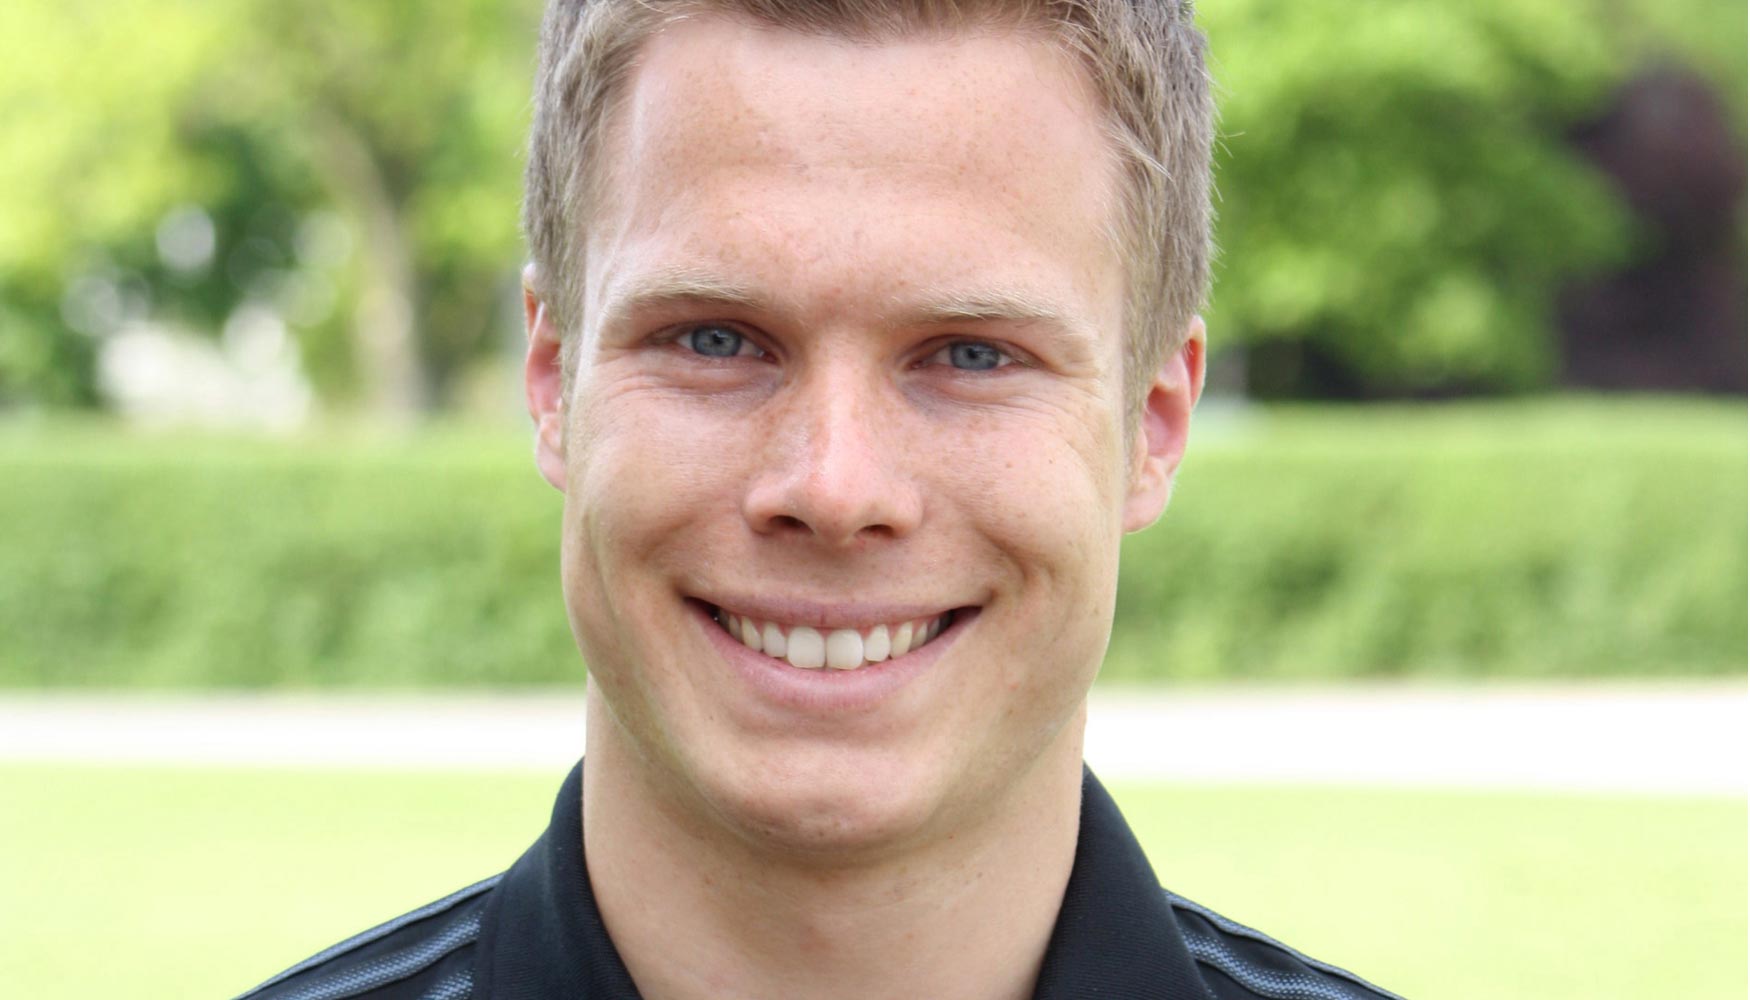 Markus Rehm, vencedor en salto de longitud en los Paralmpicos de 2012 y maestro mecnico ortopedista, Centro de Salud Rahm, Troisdorf (Alemania)...